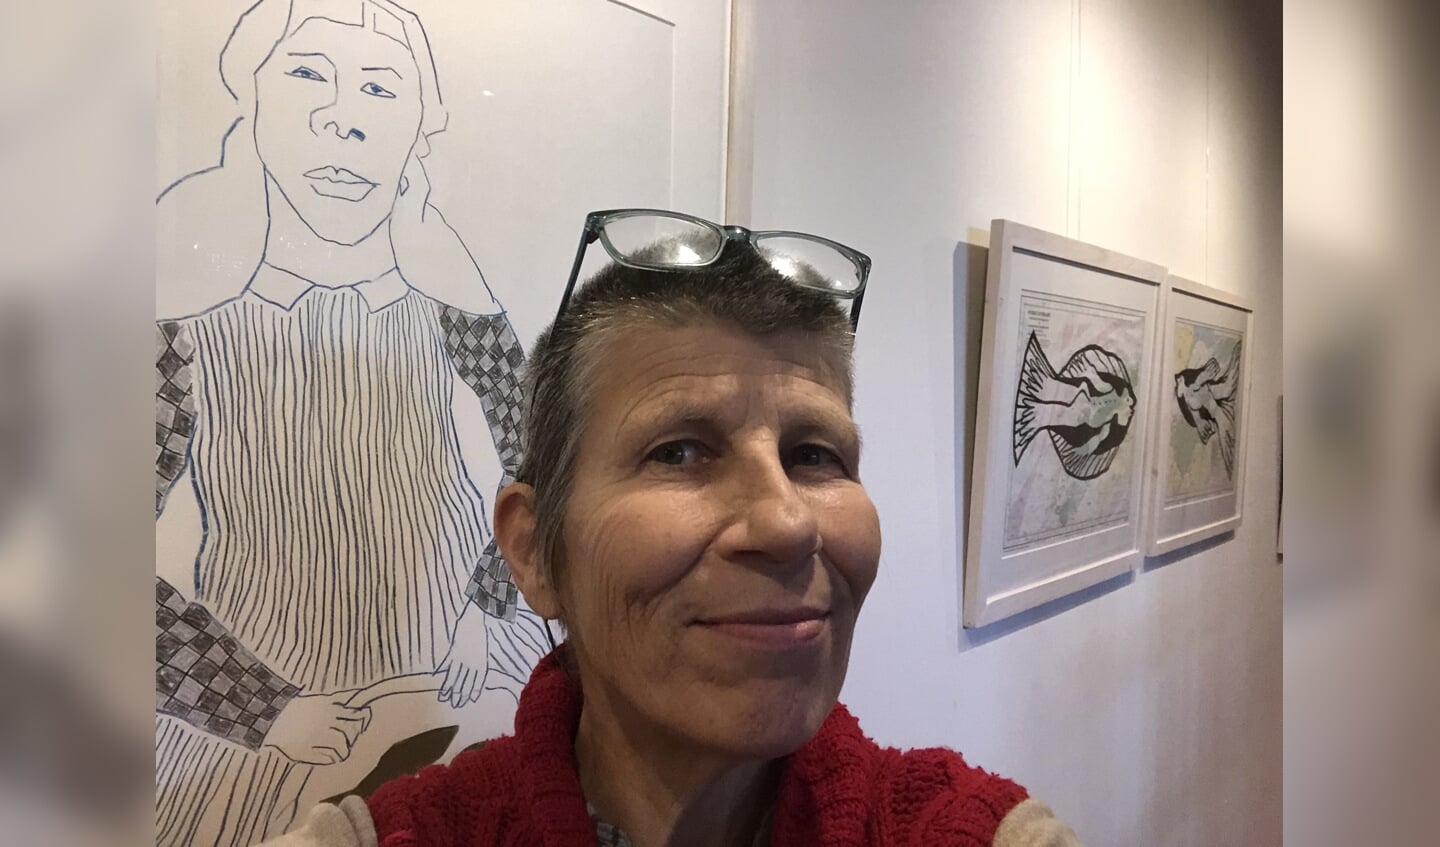 Titit Zaadnoordijk op haar expositie in de Stadsgehoorzaal